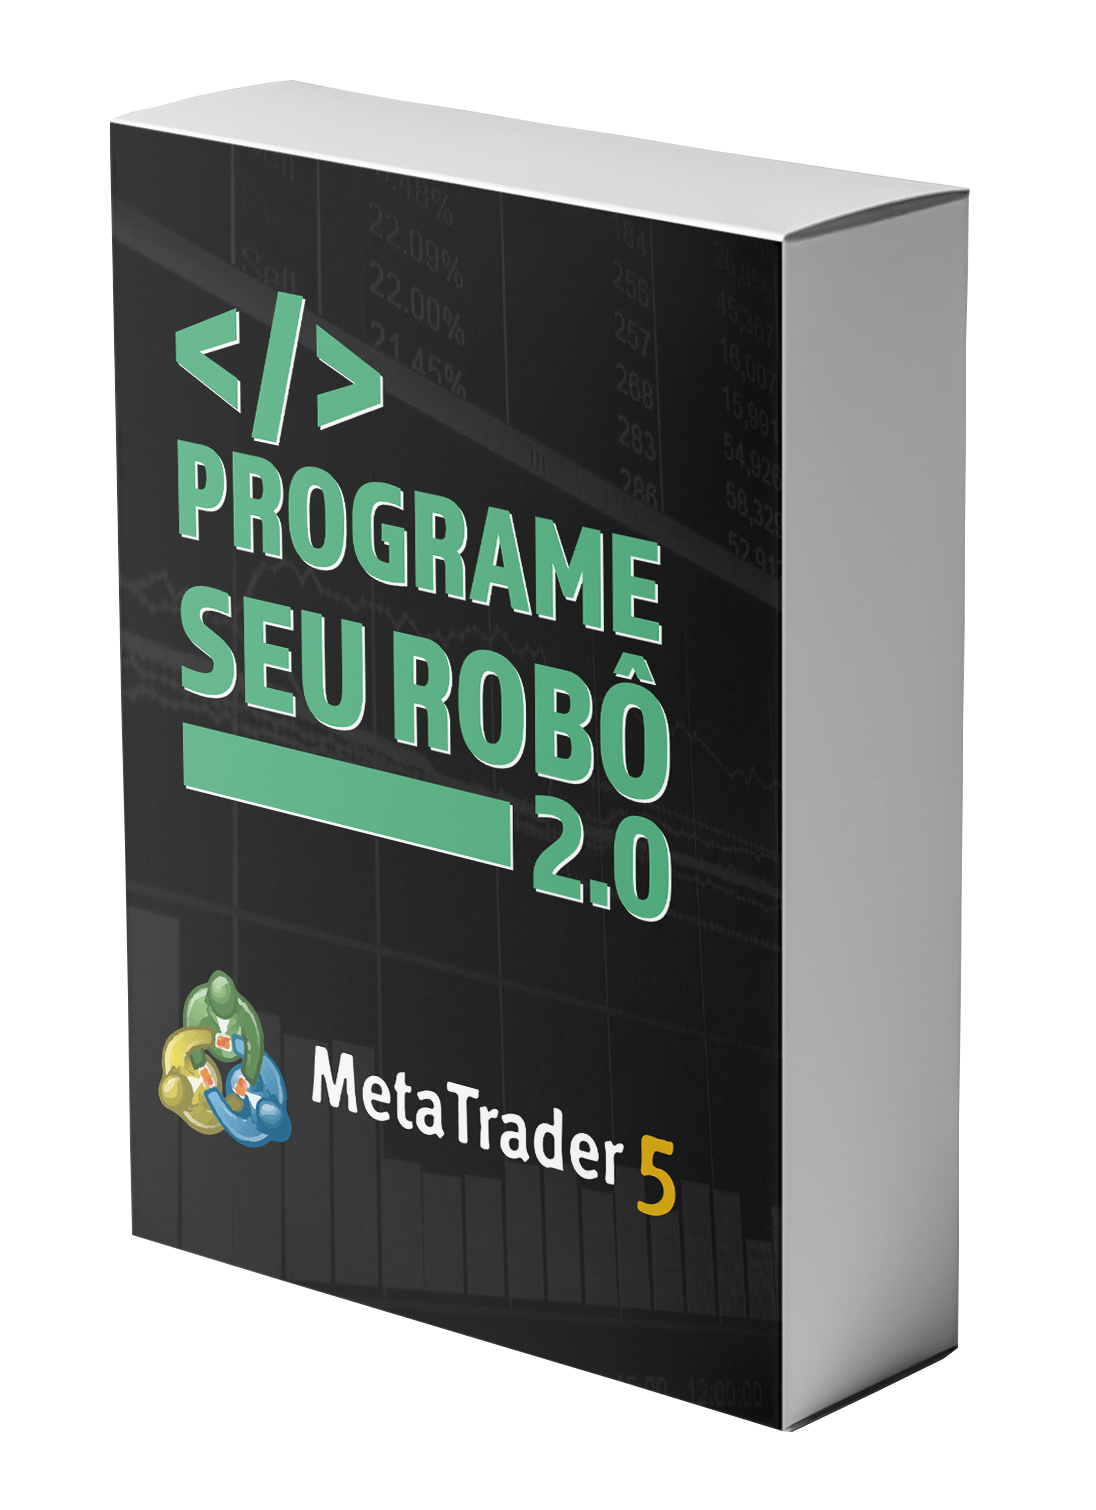 Delta Trader - Programe seu Robô 2.0